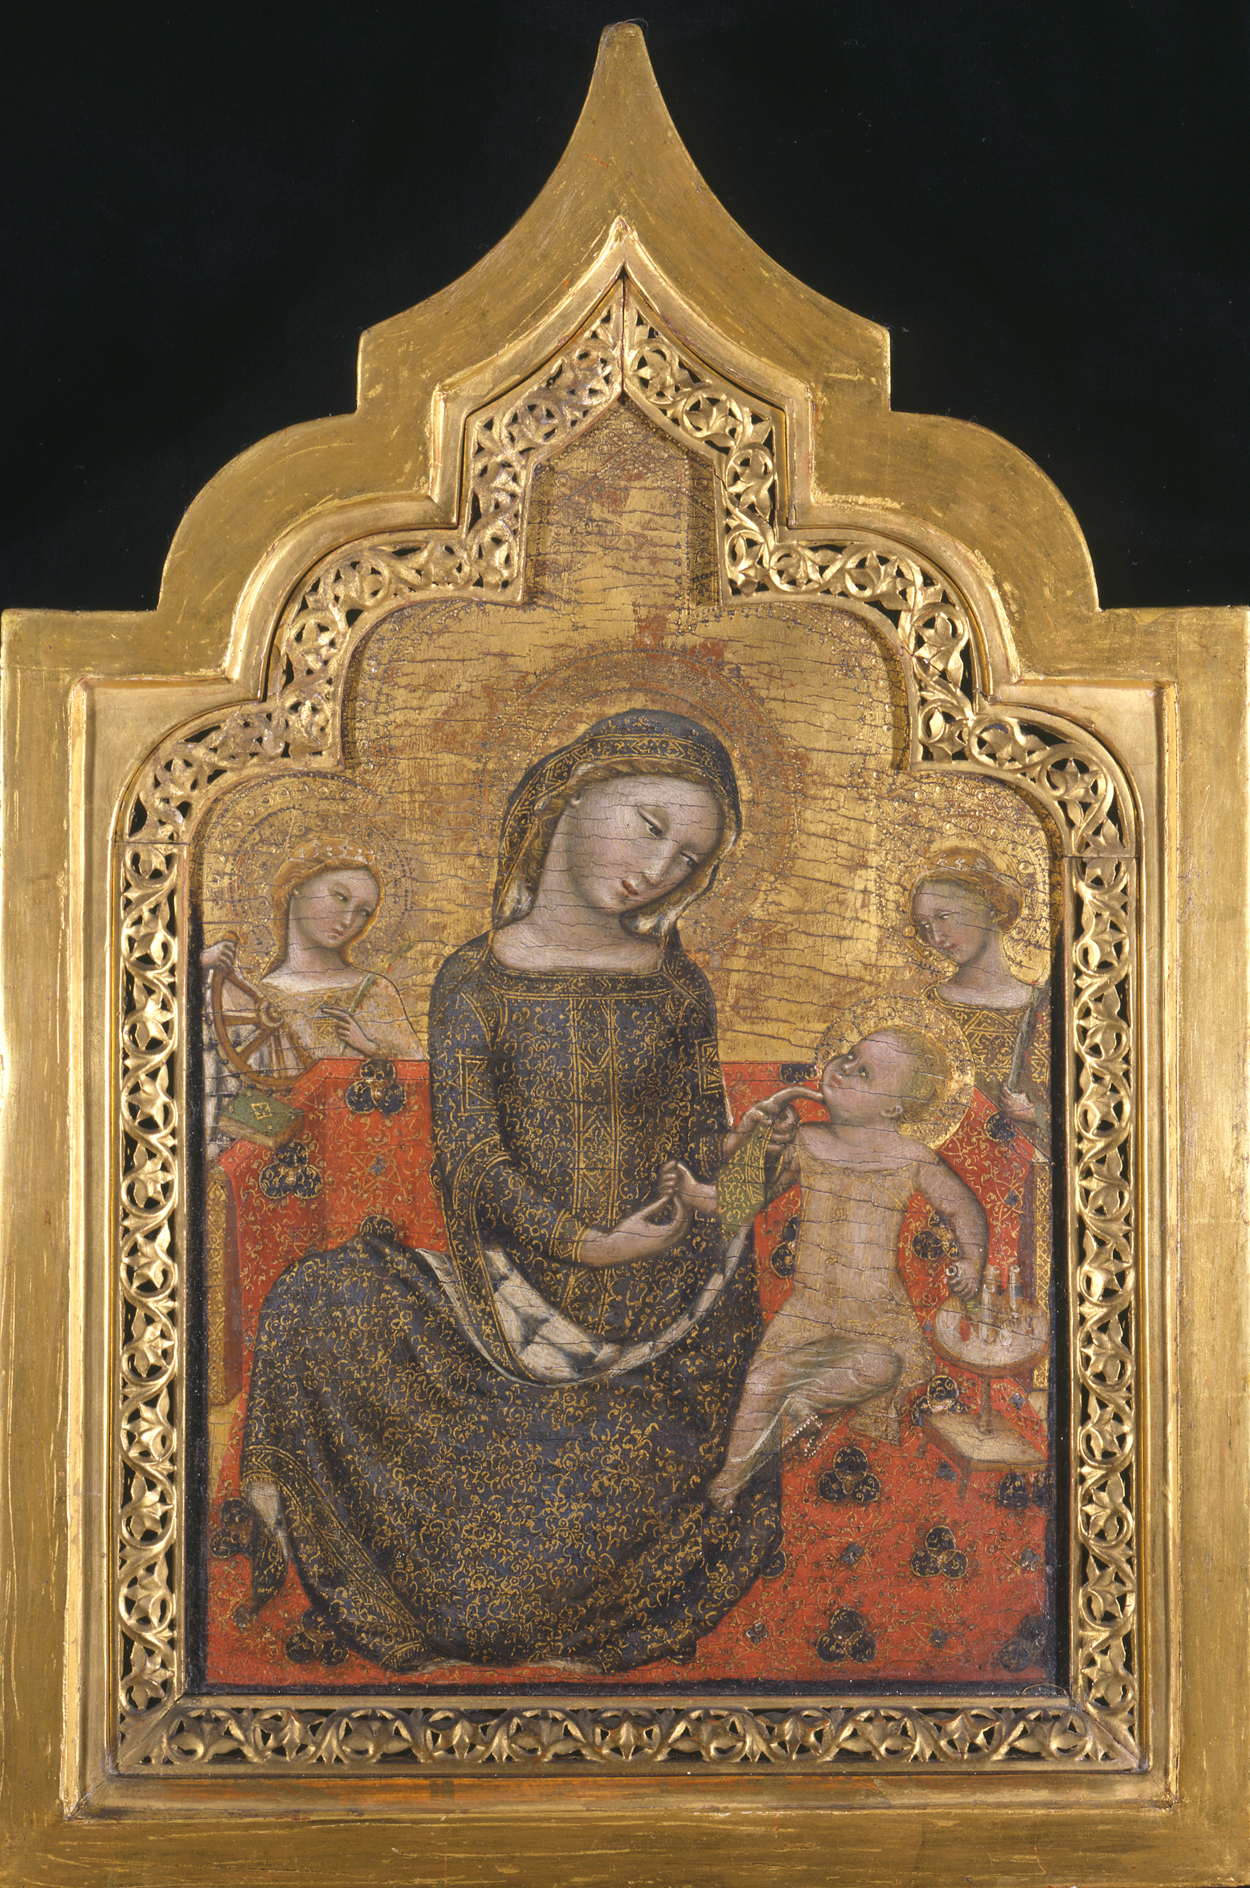 谦卑的圣母 by 维塔莱 达·博洛尼亚 - ca. 1353 - 41 x 24 cm 